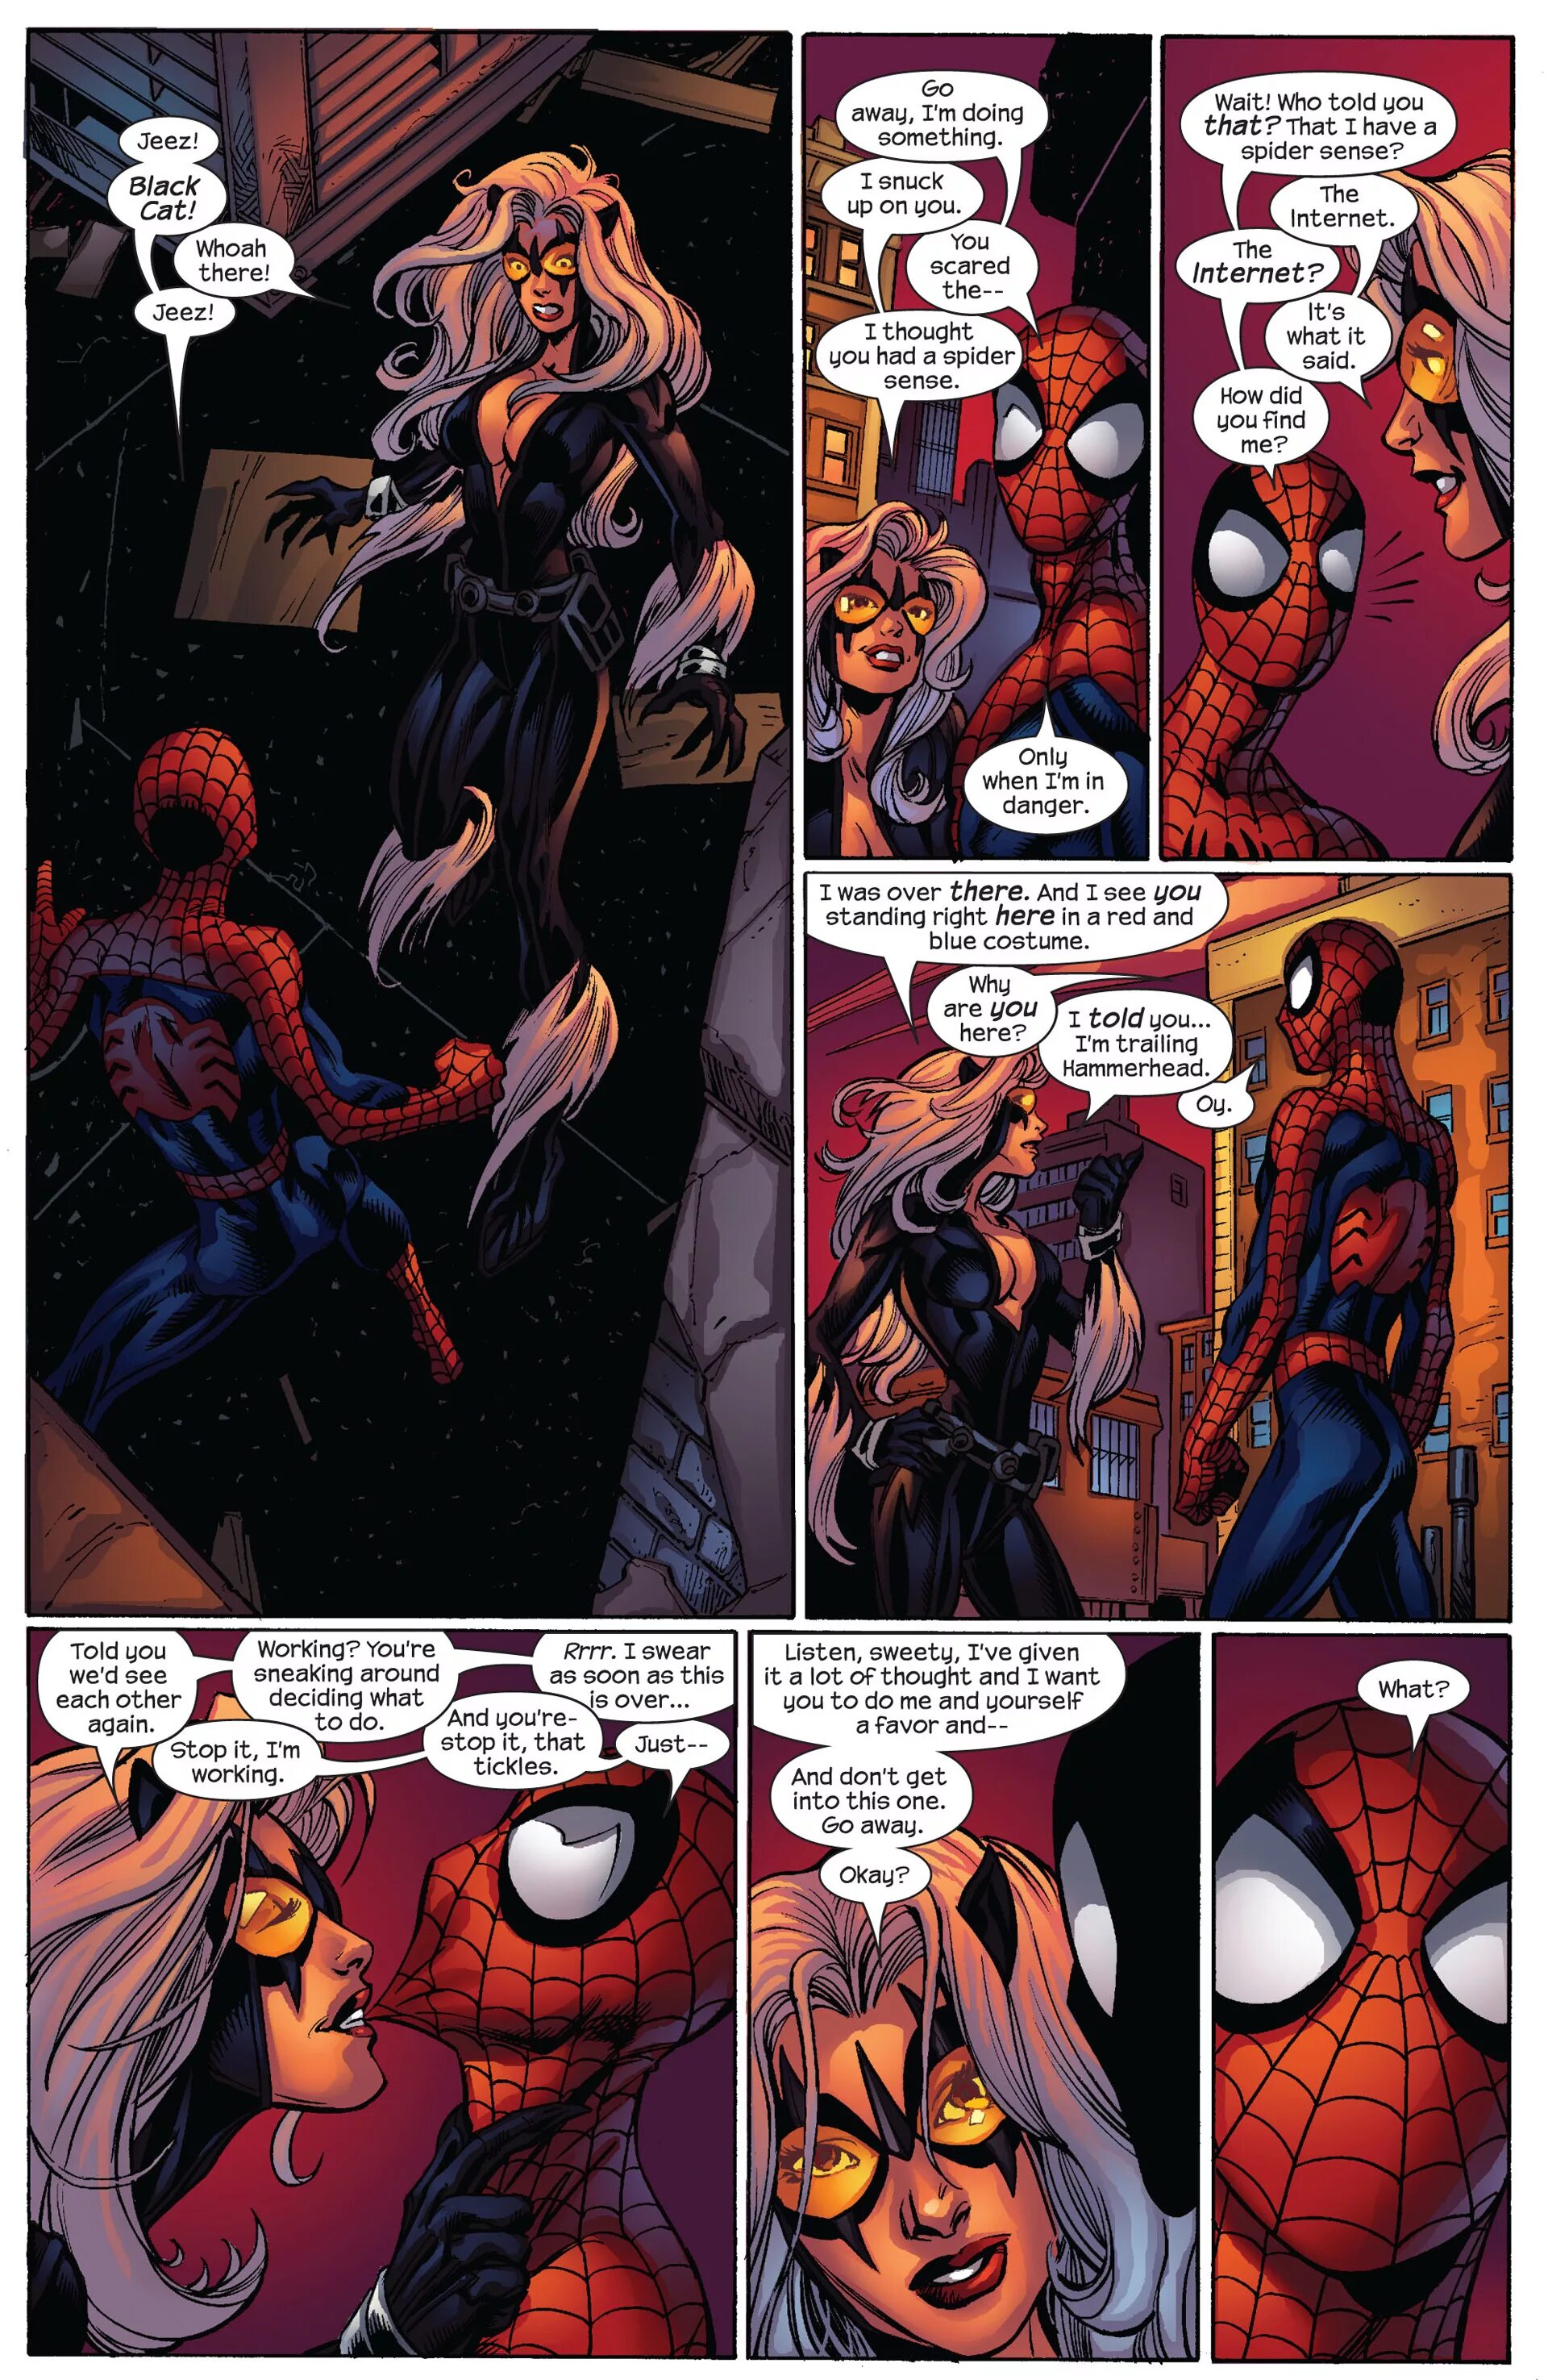 Кошка паук комиксы. Человек паук и черная кошка ультимейт. Ultimate Spider-man черная кошка. Человек паук Алтимейт 2000 черная кошка. Человек паук и черная кошка Алтимейт.